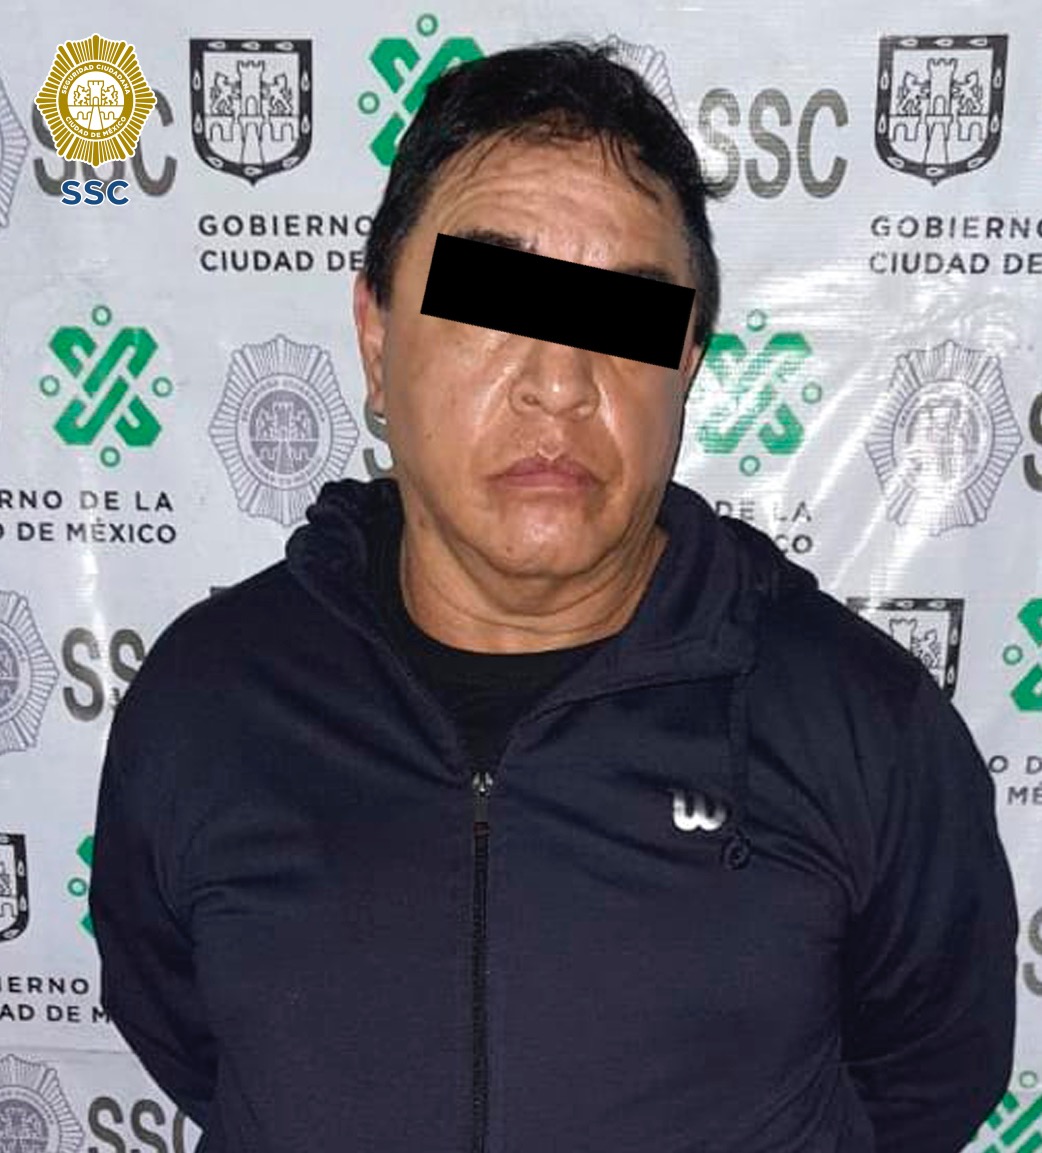 En la alcaldía Coyoacán, Efectivos de la SSC detuvieron a un hombre que, a bordo de un automóvil, manipulaba diversos envoltorios con aparente droga